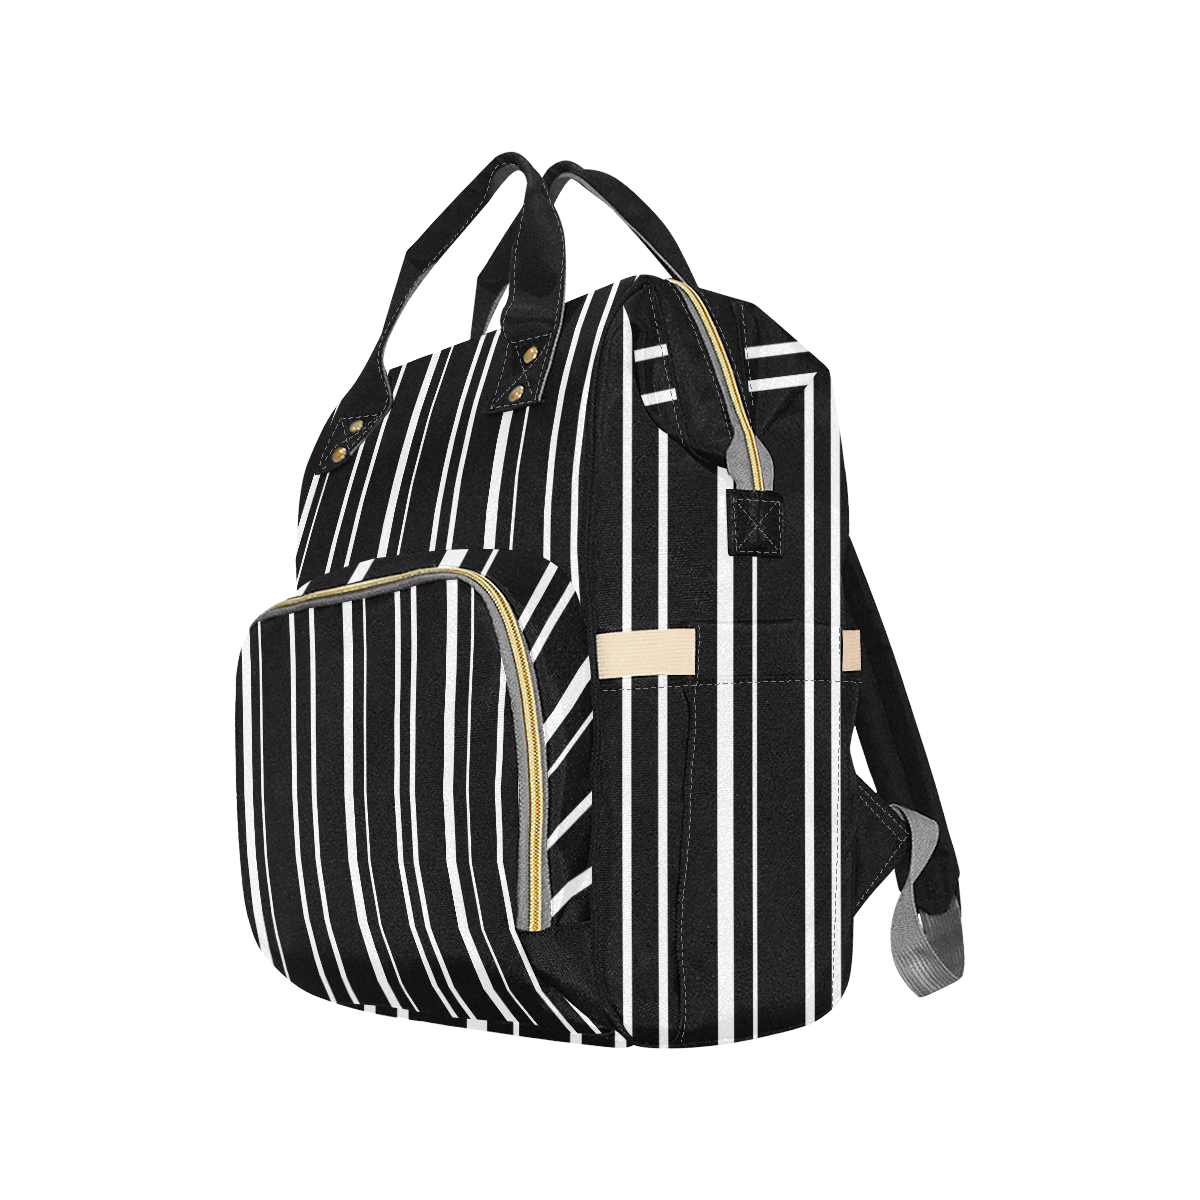 white stripes on black Multi-Function Diaper Backpack/Diaper Bag (Model 1688)